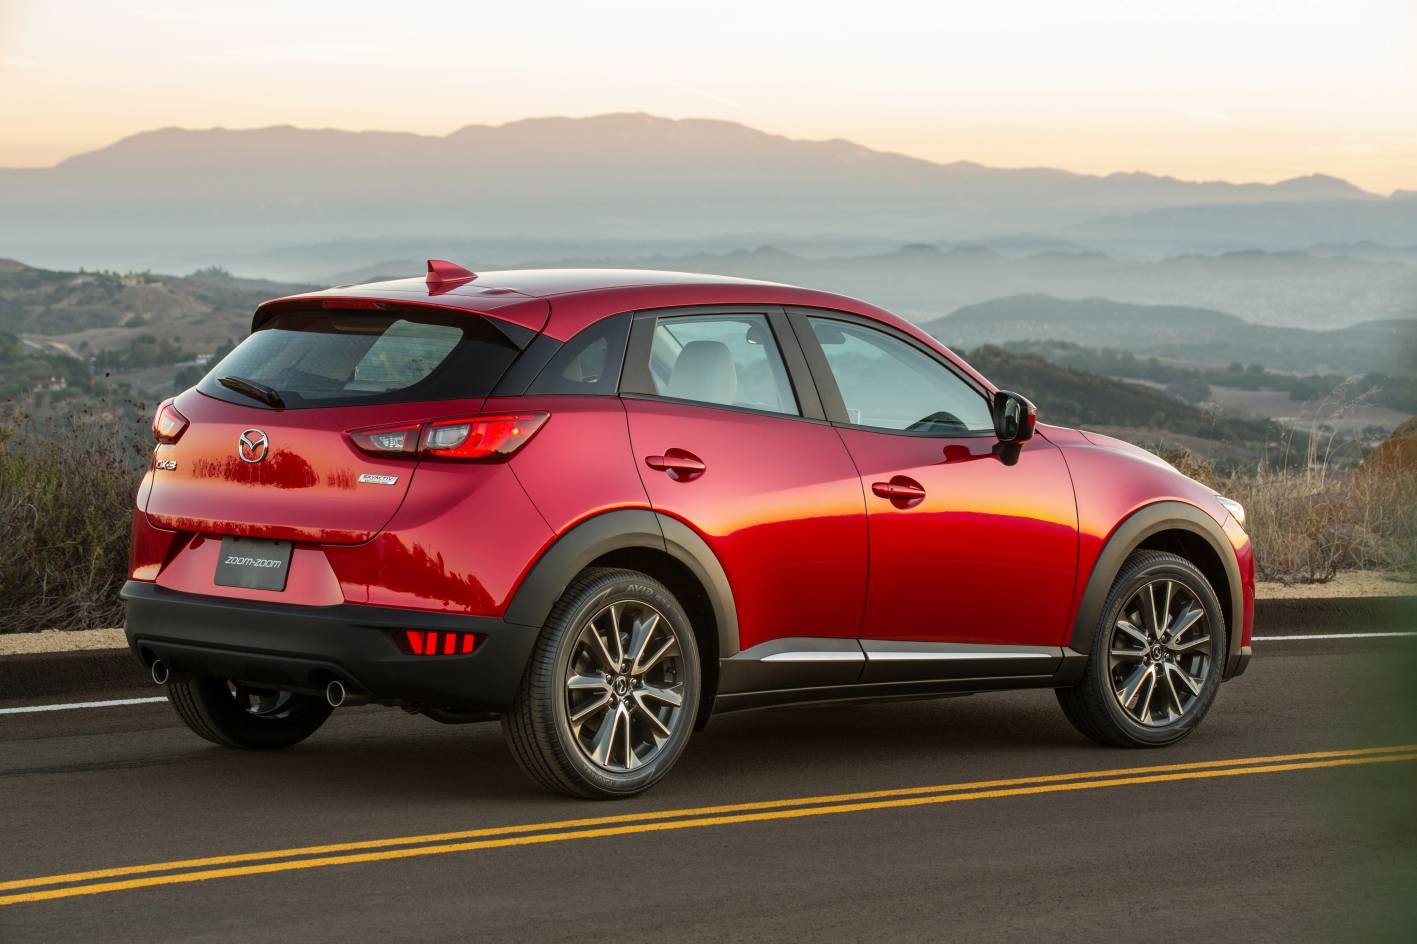 2015 Mazda CX3 unveiled at LA Auto Show PerformanceDrive